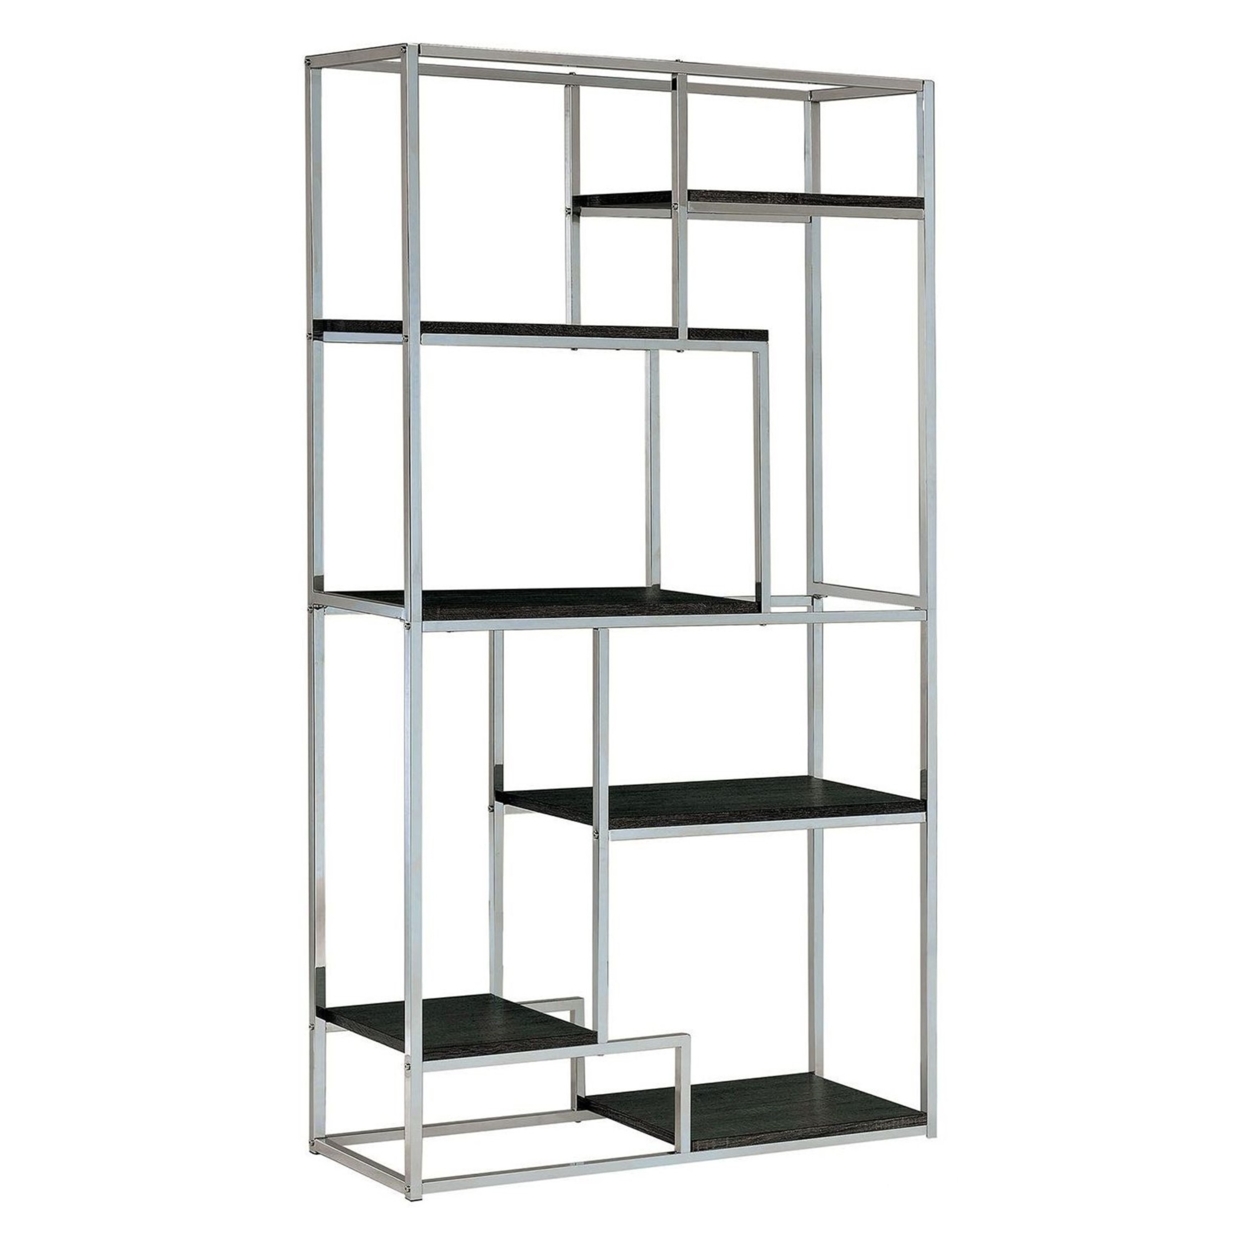 Elvira Contemporary Display Shelf, Chrome Finish- Saltoro Sherpi